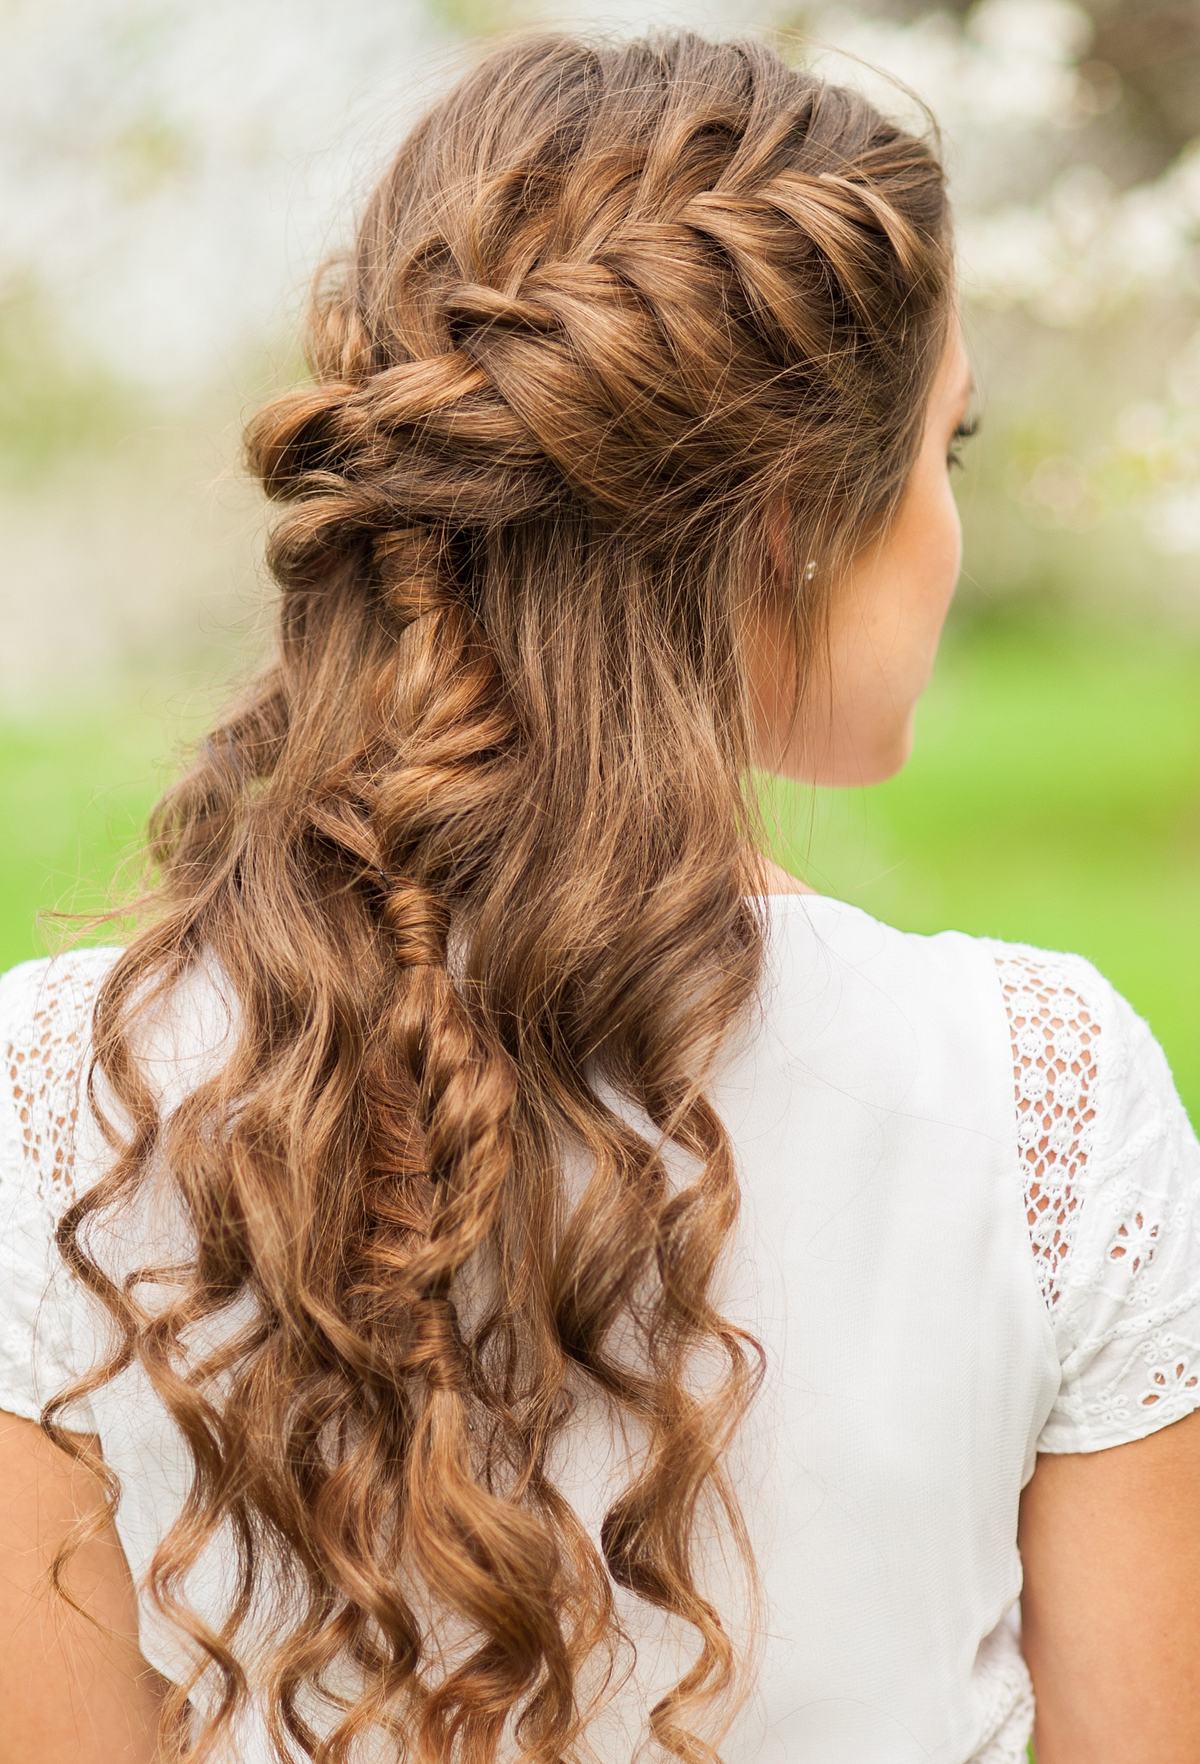 Brautfrisur halboffen: Schöne Styles für jede Haarlänge